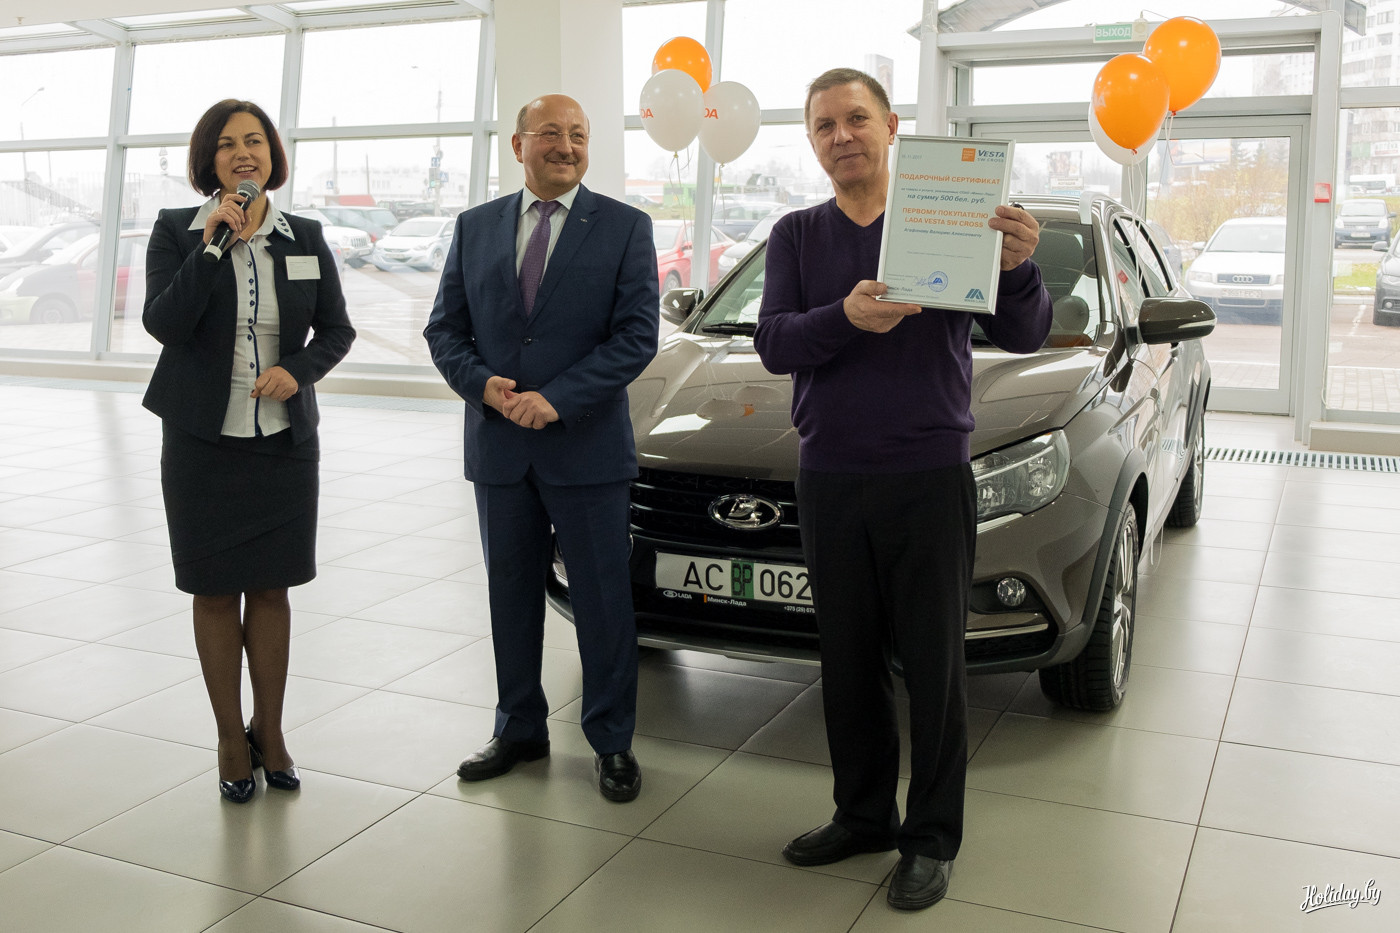 Валерий Алексеевич Агафонов, инженер запаса с водительским стажем 35 лет стал первым клиентом, получившим ключи от Lada Vesta SW. Это его первый новый автомобиль